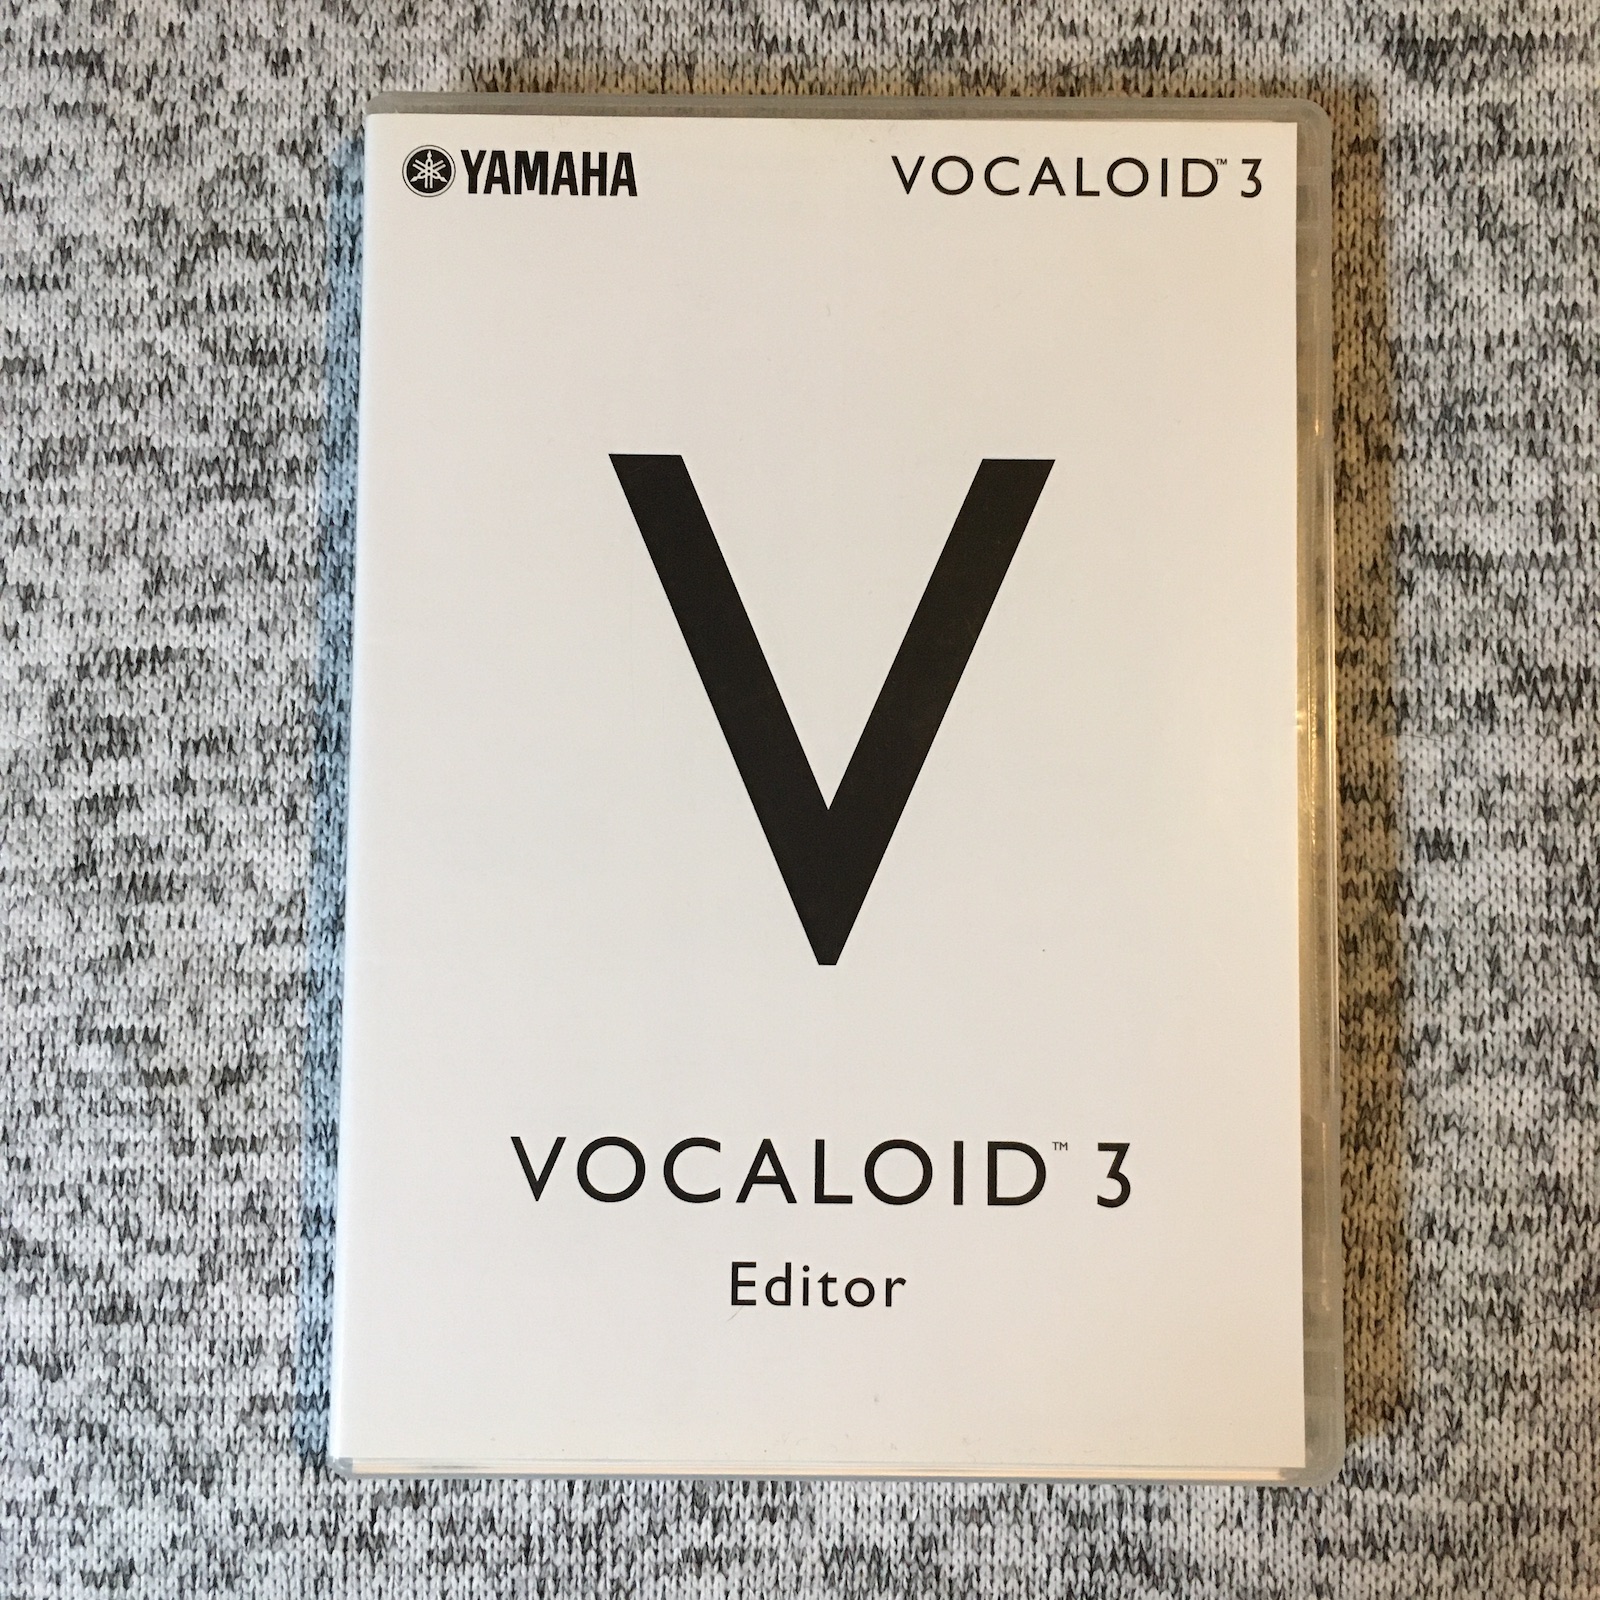 VOCALOID 3 Editor box.